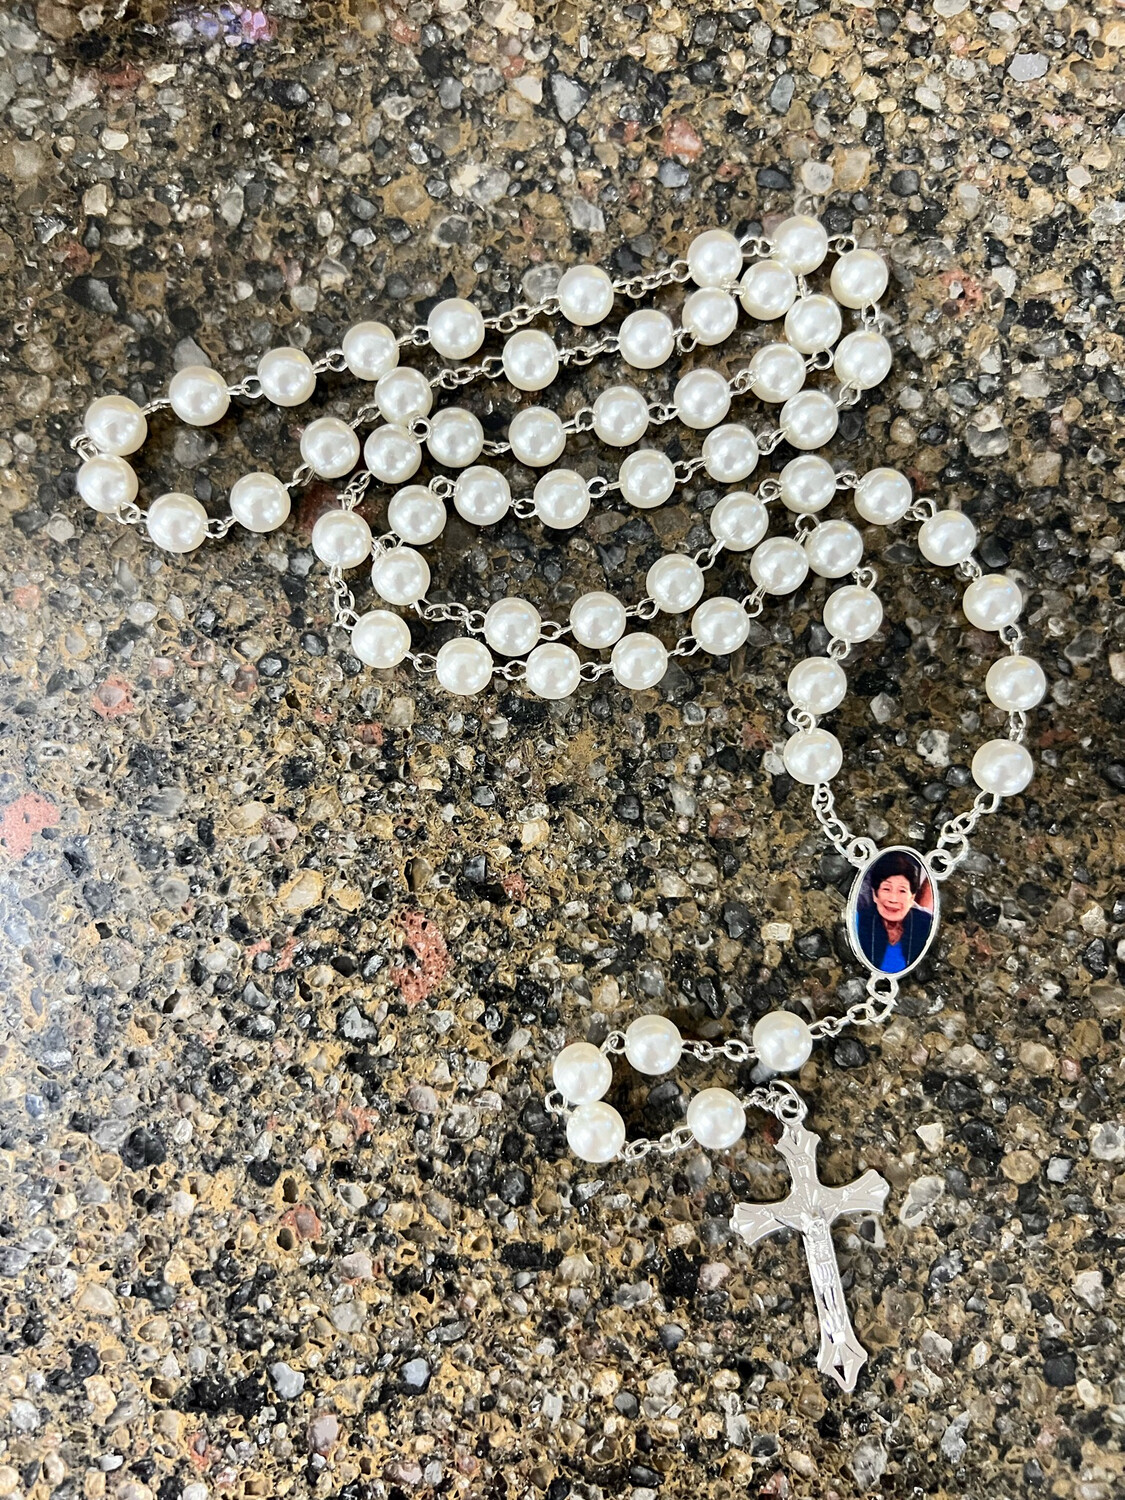 Handheld Photo Memorial Rosary Beads